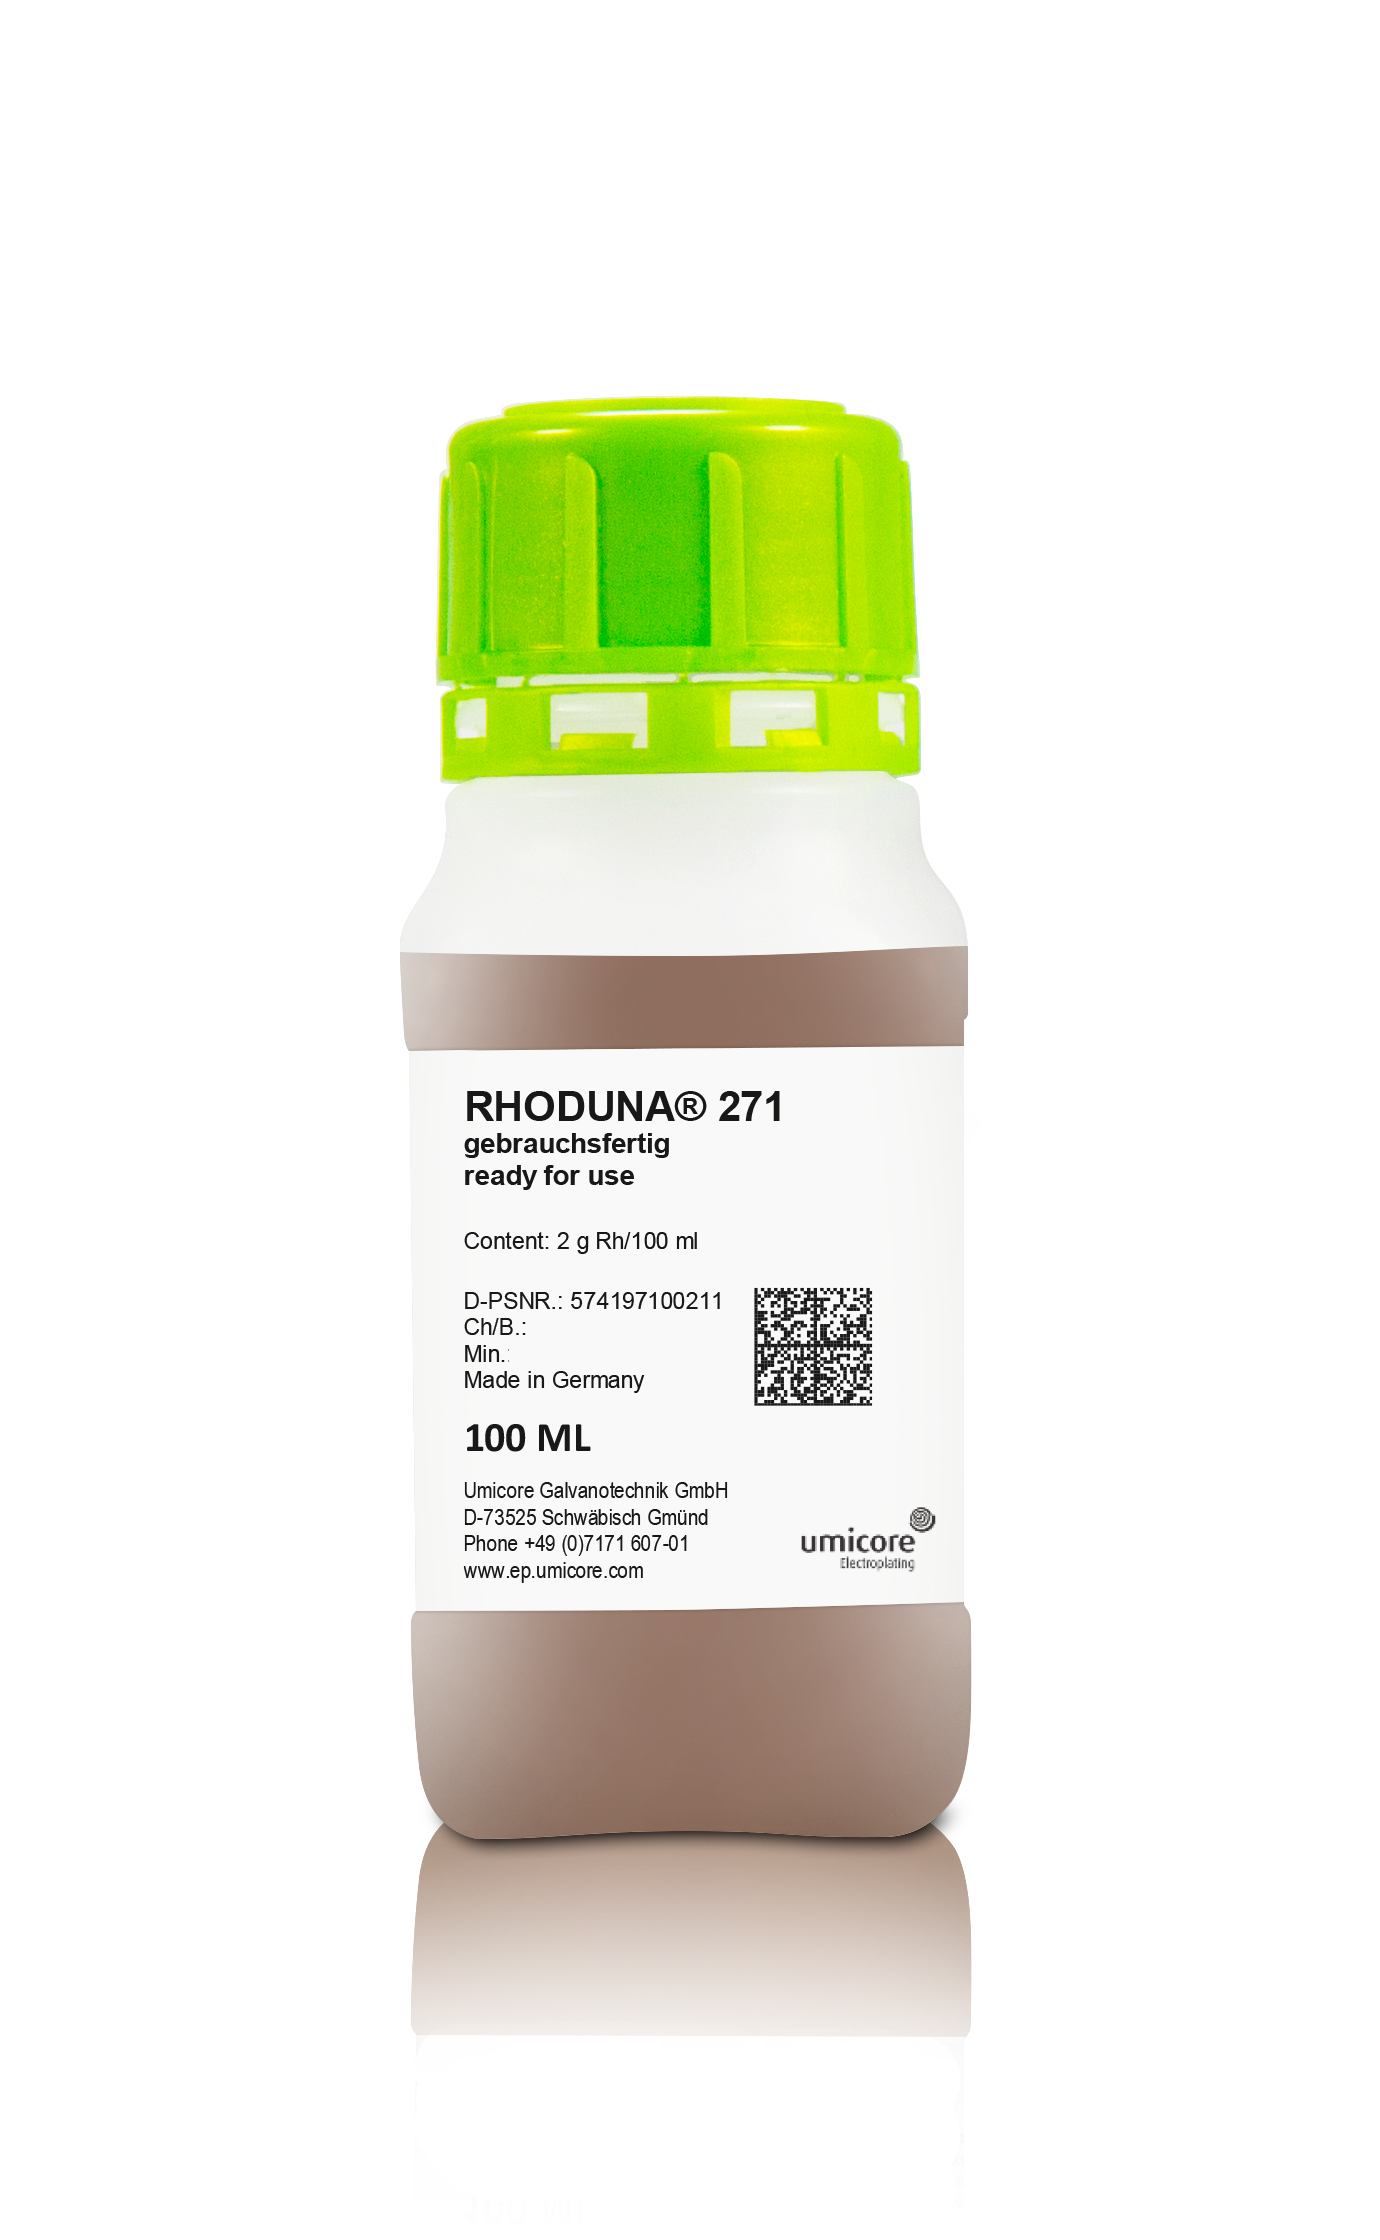 Rhodium bath for electroplating Wieland